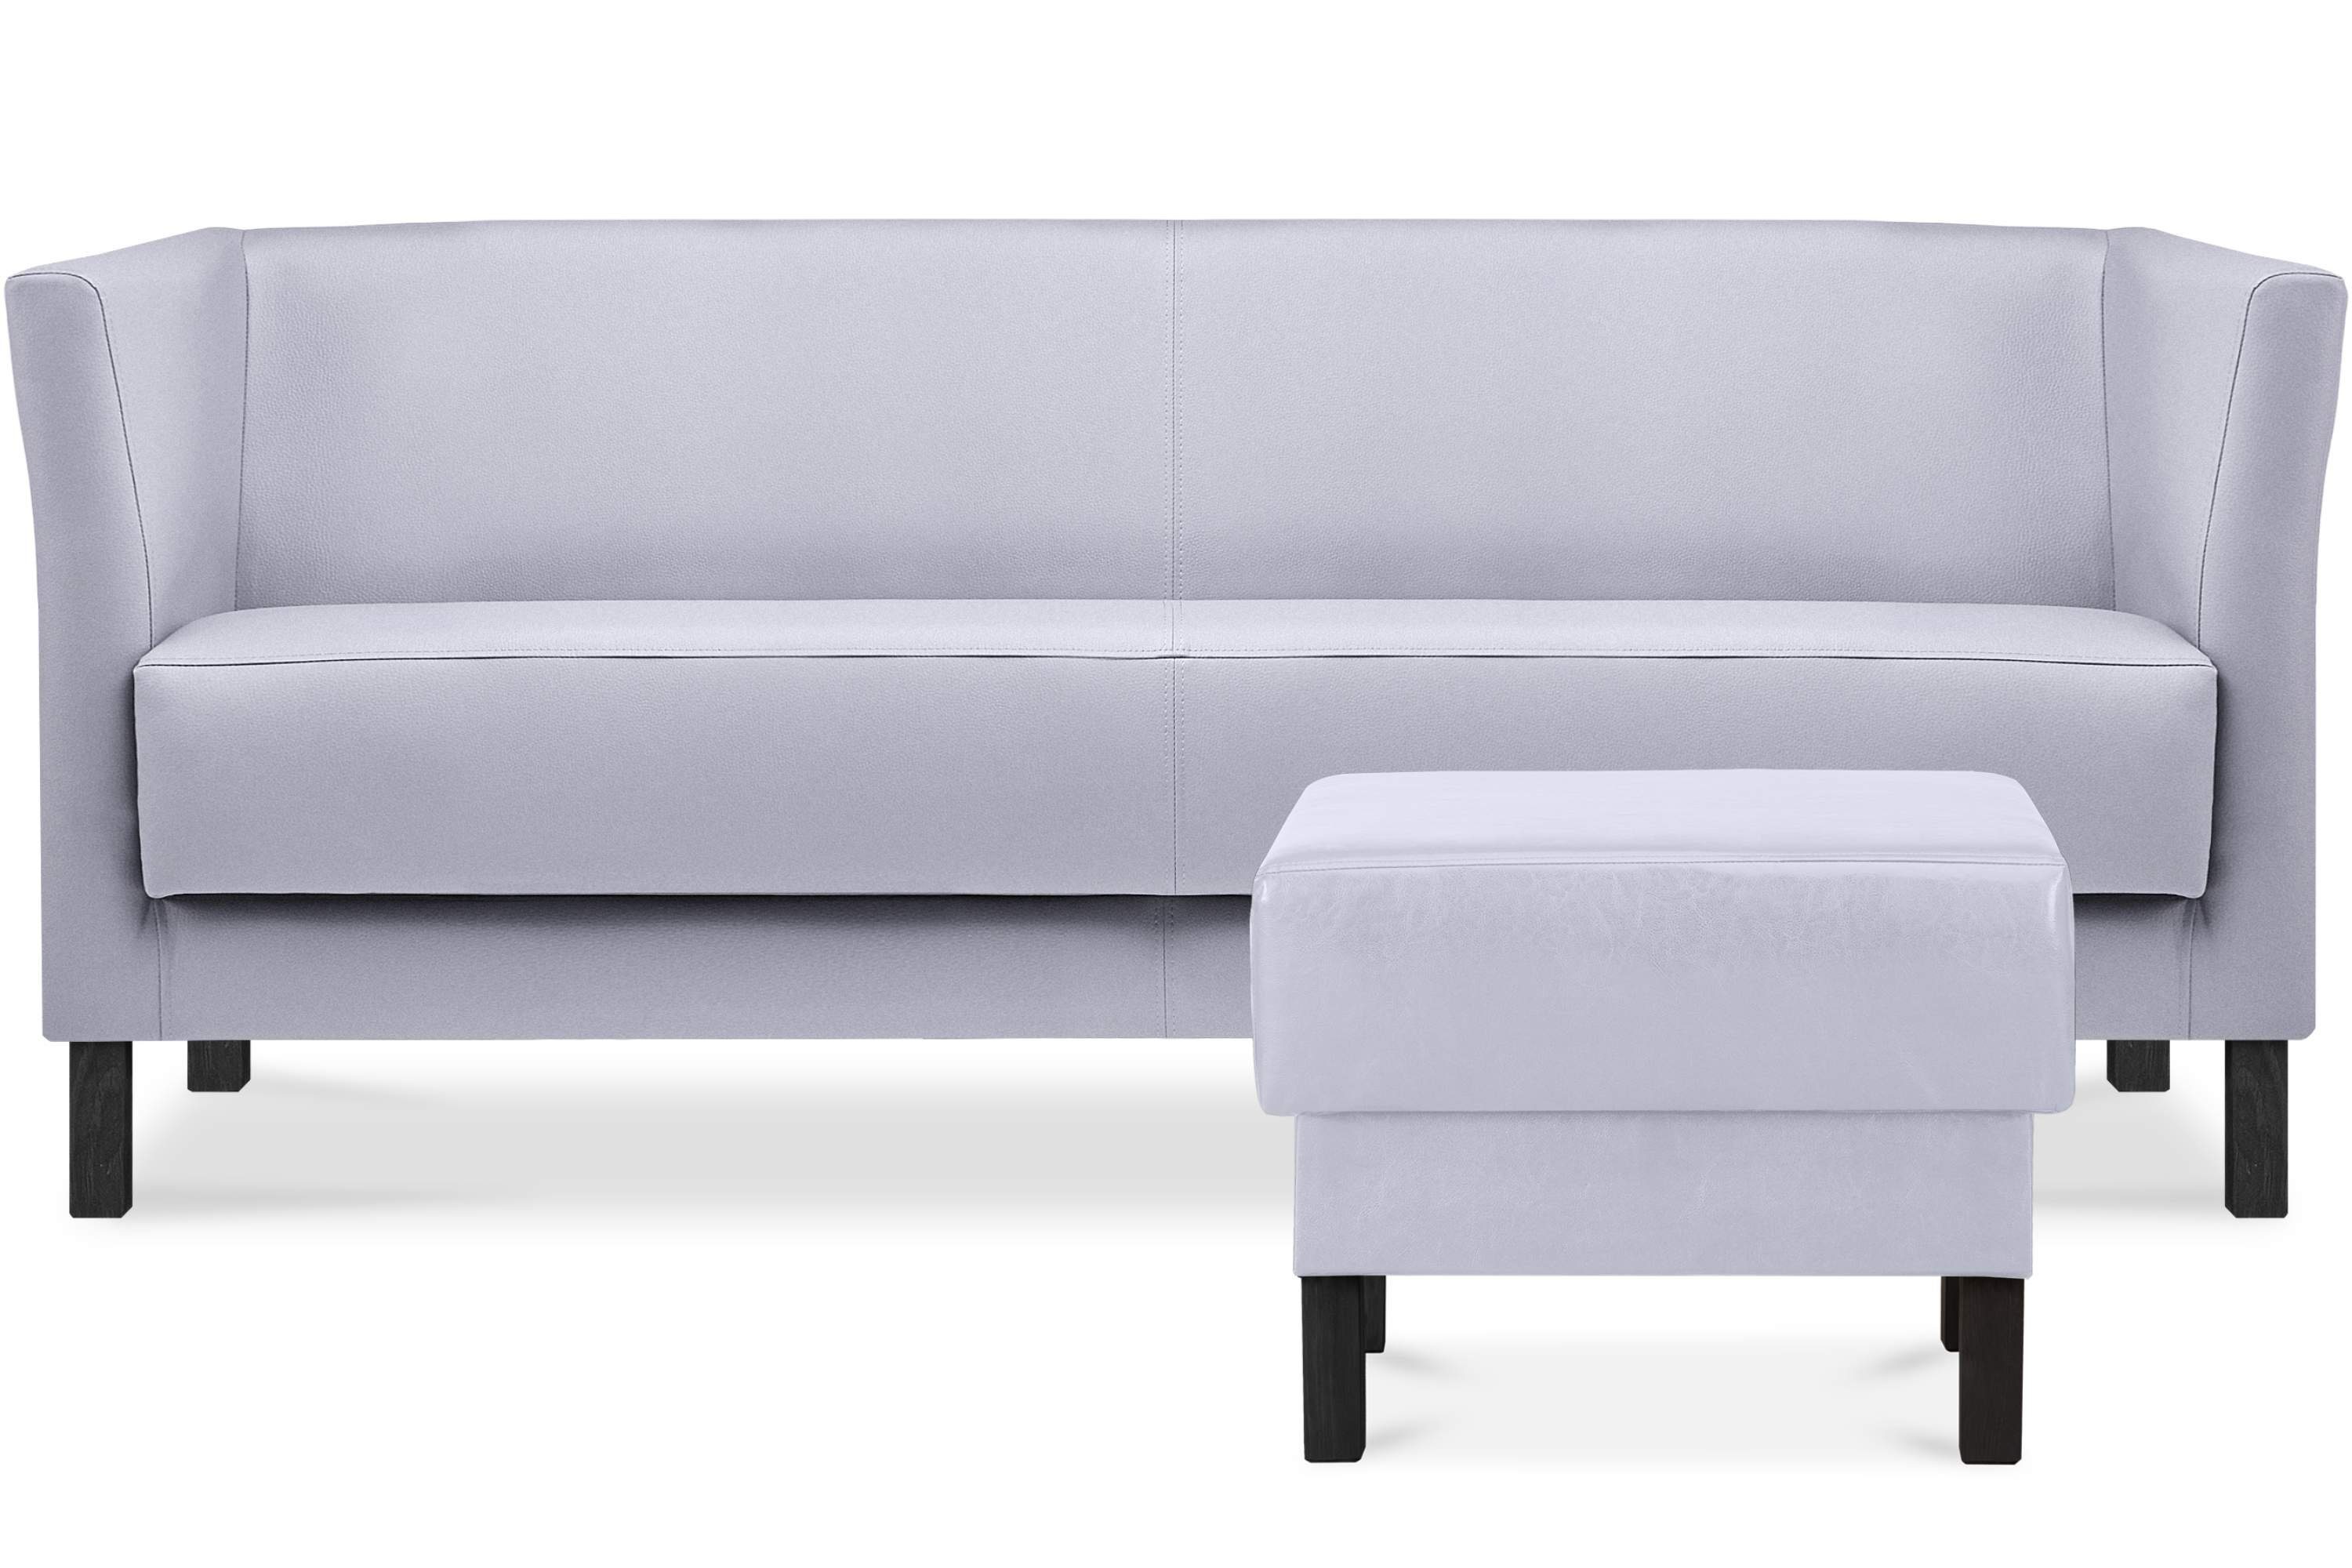 Sitzfläche 1 Teile, Sofa grau hohe Beine, ESPECTO | grau weiche Kunstleder 3 und hohe Rückenlehne, Sofa Sitzer, Konsimo